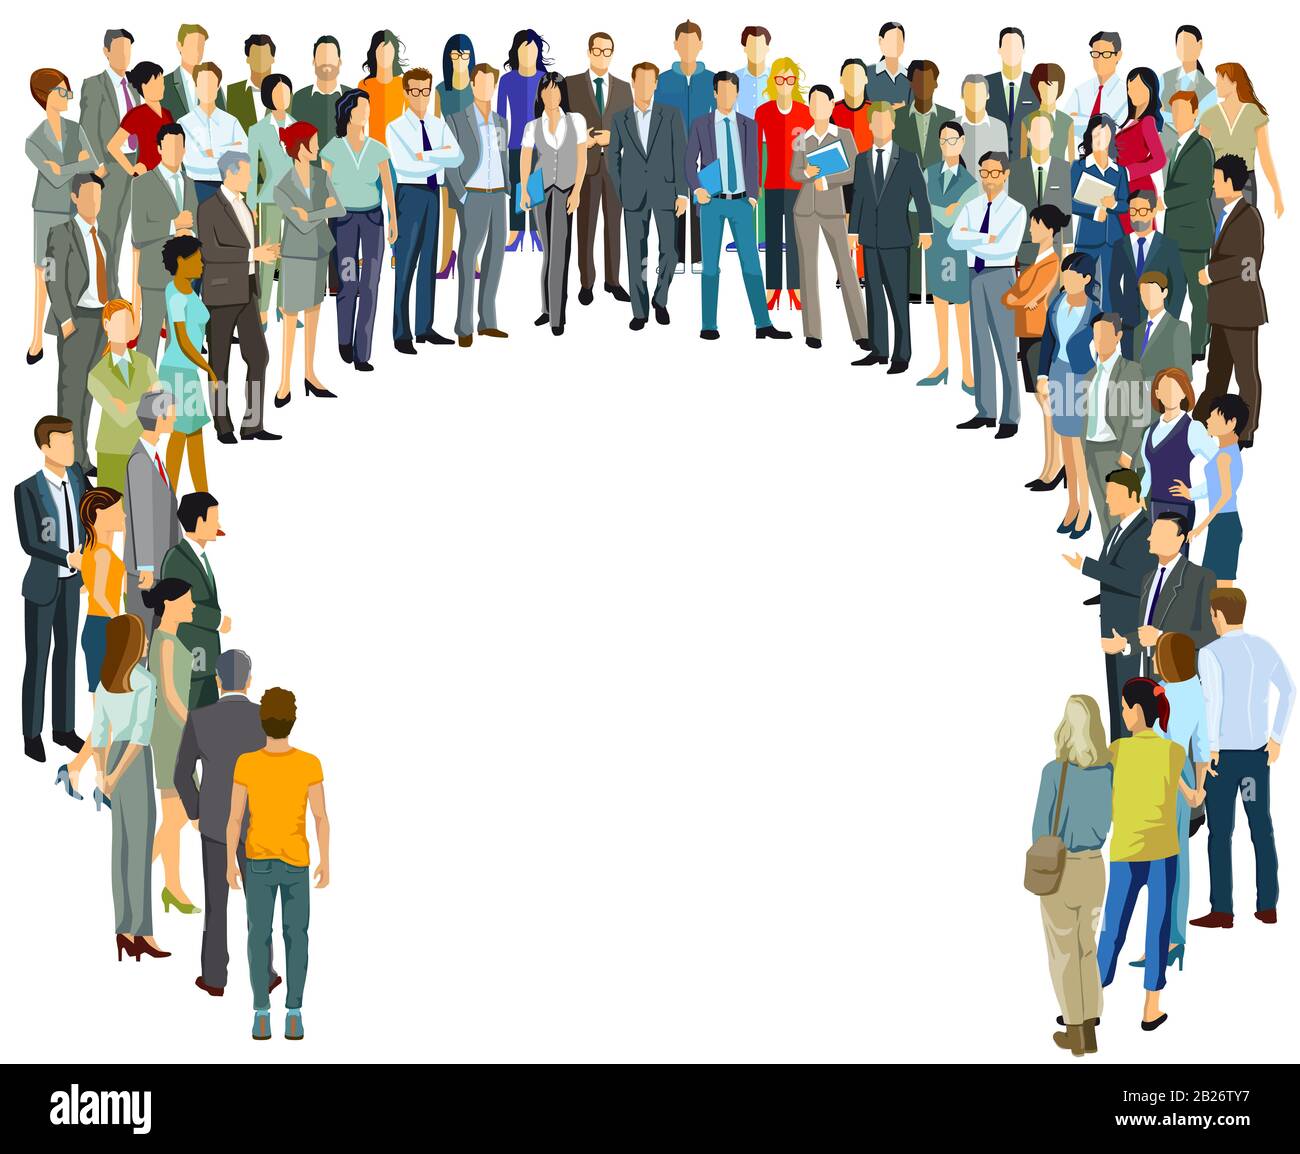 Große Gruppe von Menschen in der Gemeinschaft - Vektorgrafiken Stockfoto